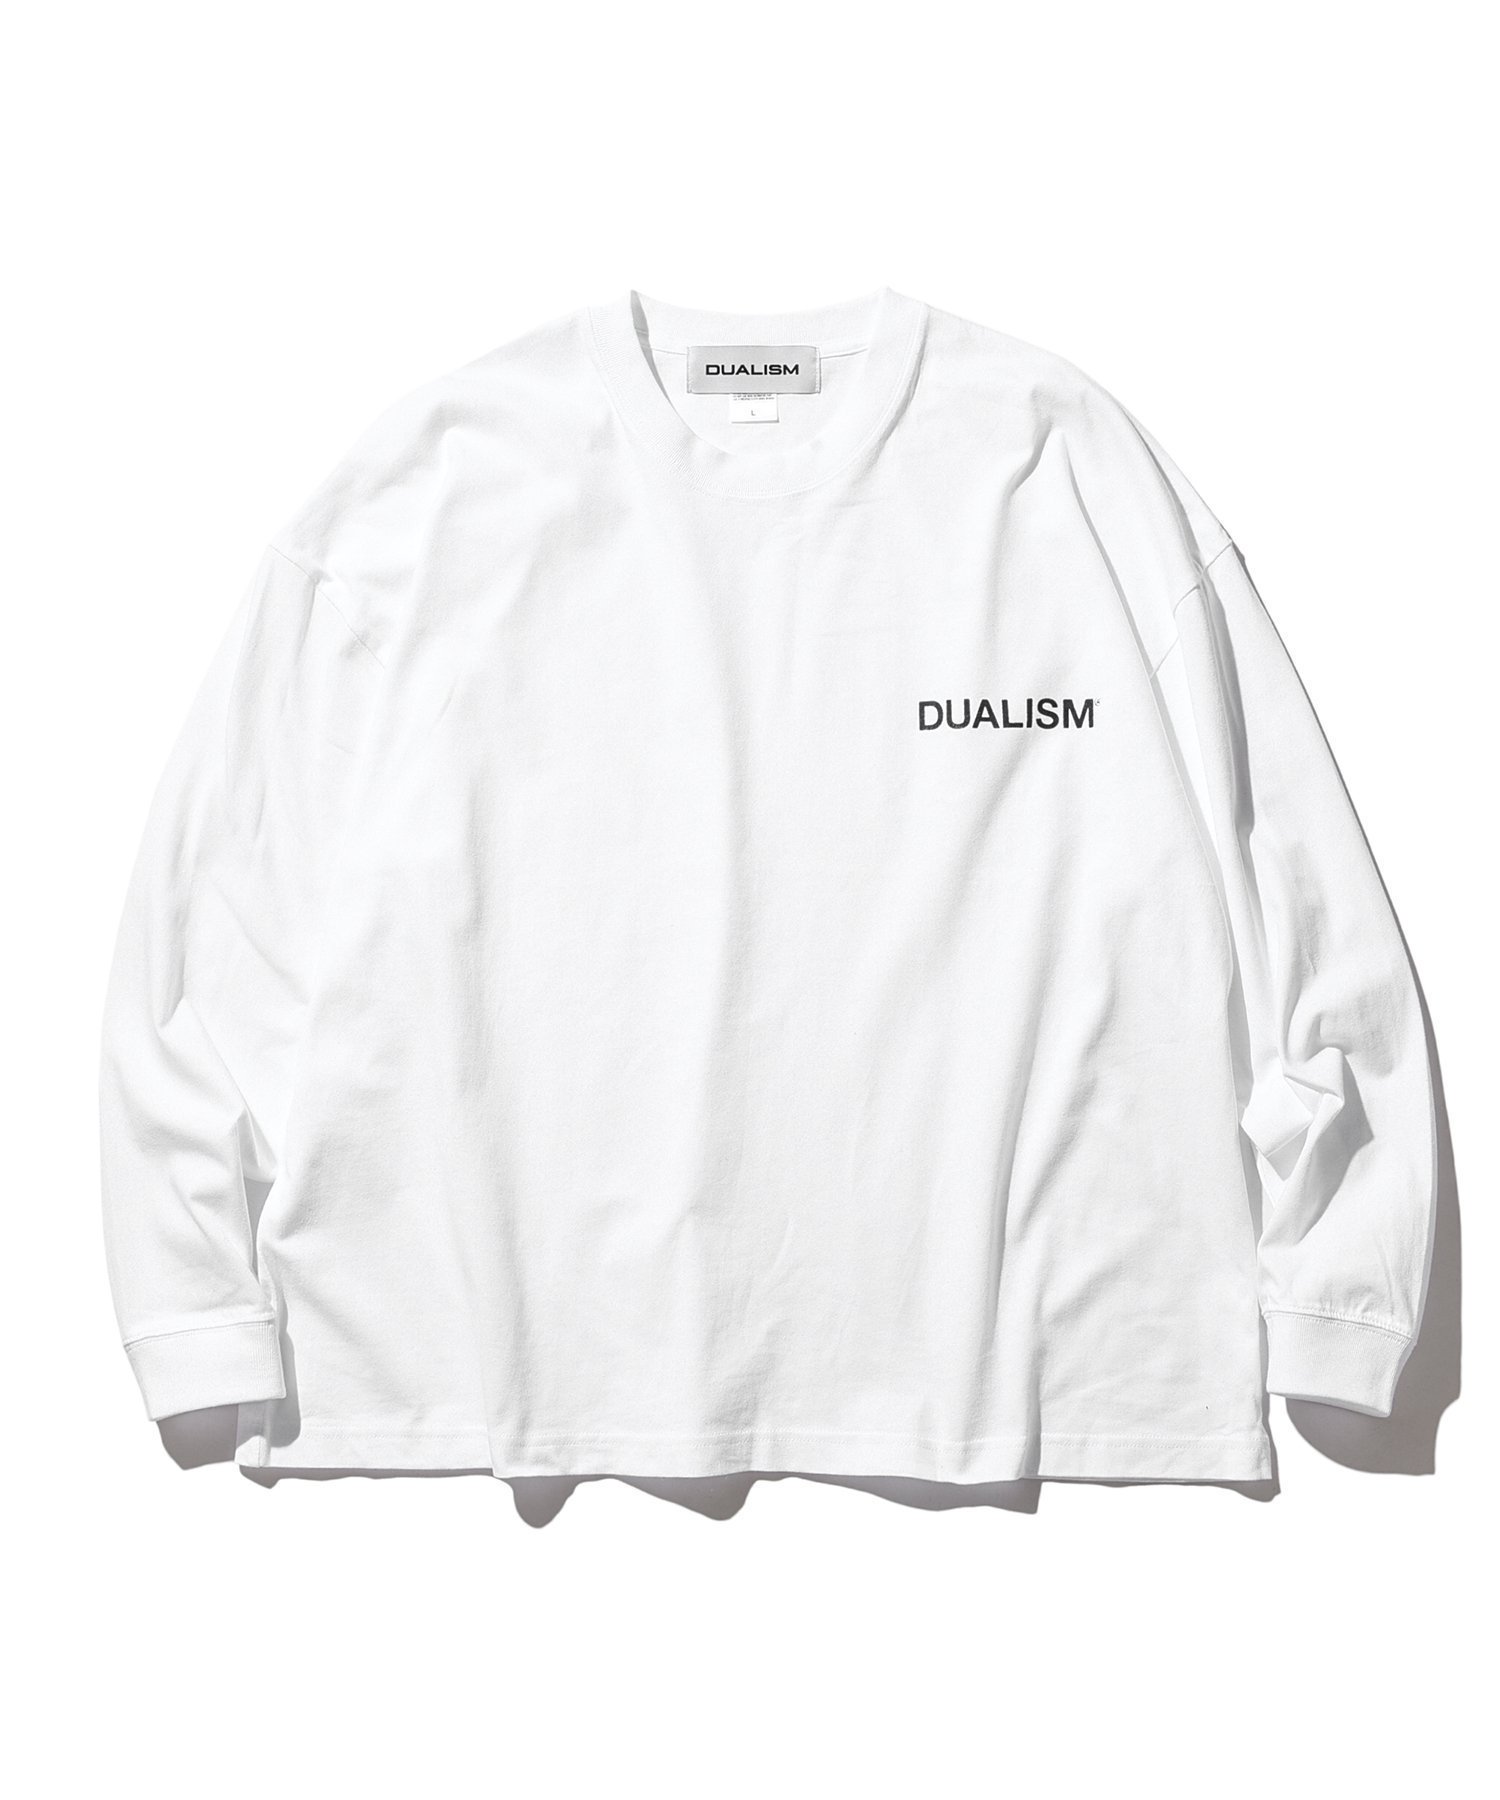 最新入荷 DUALISM 八木勇征着用 ホワイト ロングTシャツ Tシャツ 